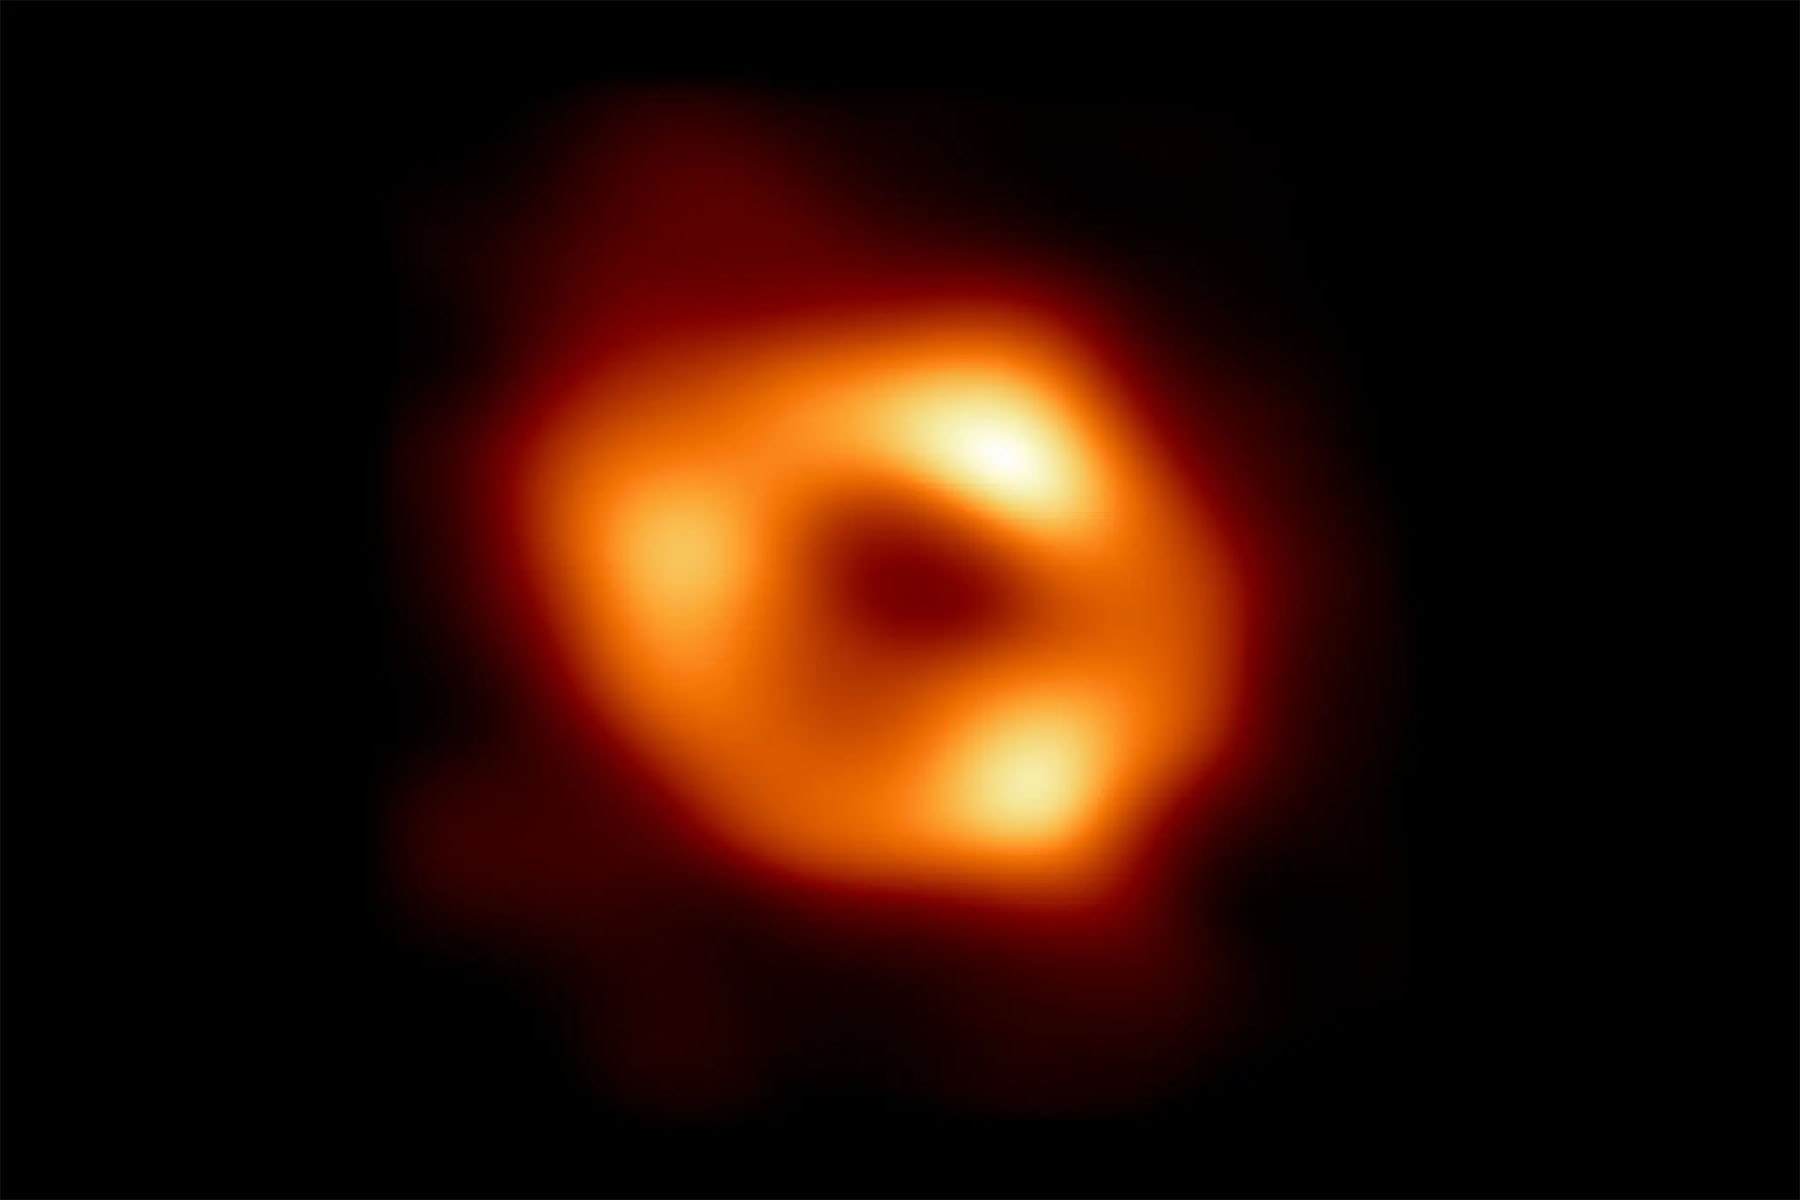 銀河系中心超大質量「黑洞」圖像首次曝光